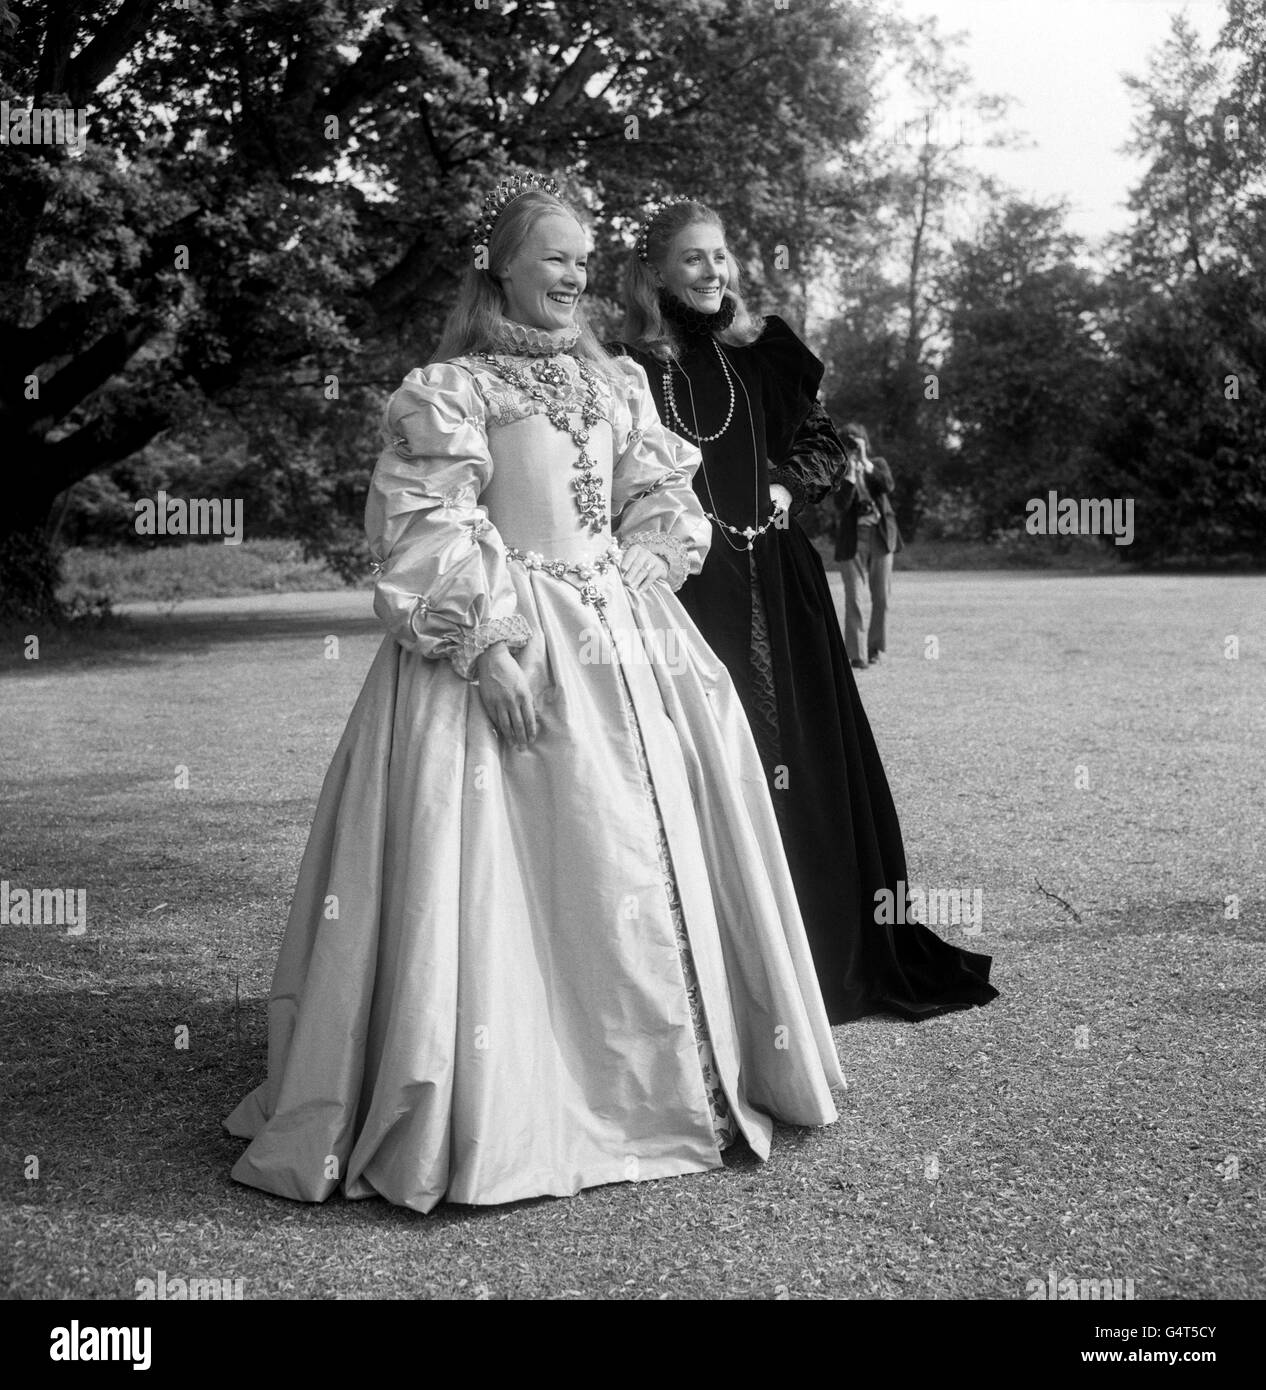 Glenda Jackson, la vincitrice dell'Academy Award, in qualità di Regina Elisabetta i d'Inghilterra, con Vanessa Redgrave, a destra, come Maria Regina degli scozzesi. Sono sul set di un nuovo film, la produzione di Hal Wallis di 'Cary, Regina degli scozzesi' Foto Stock